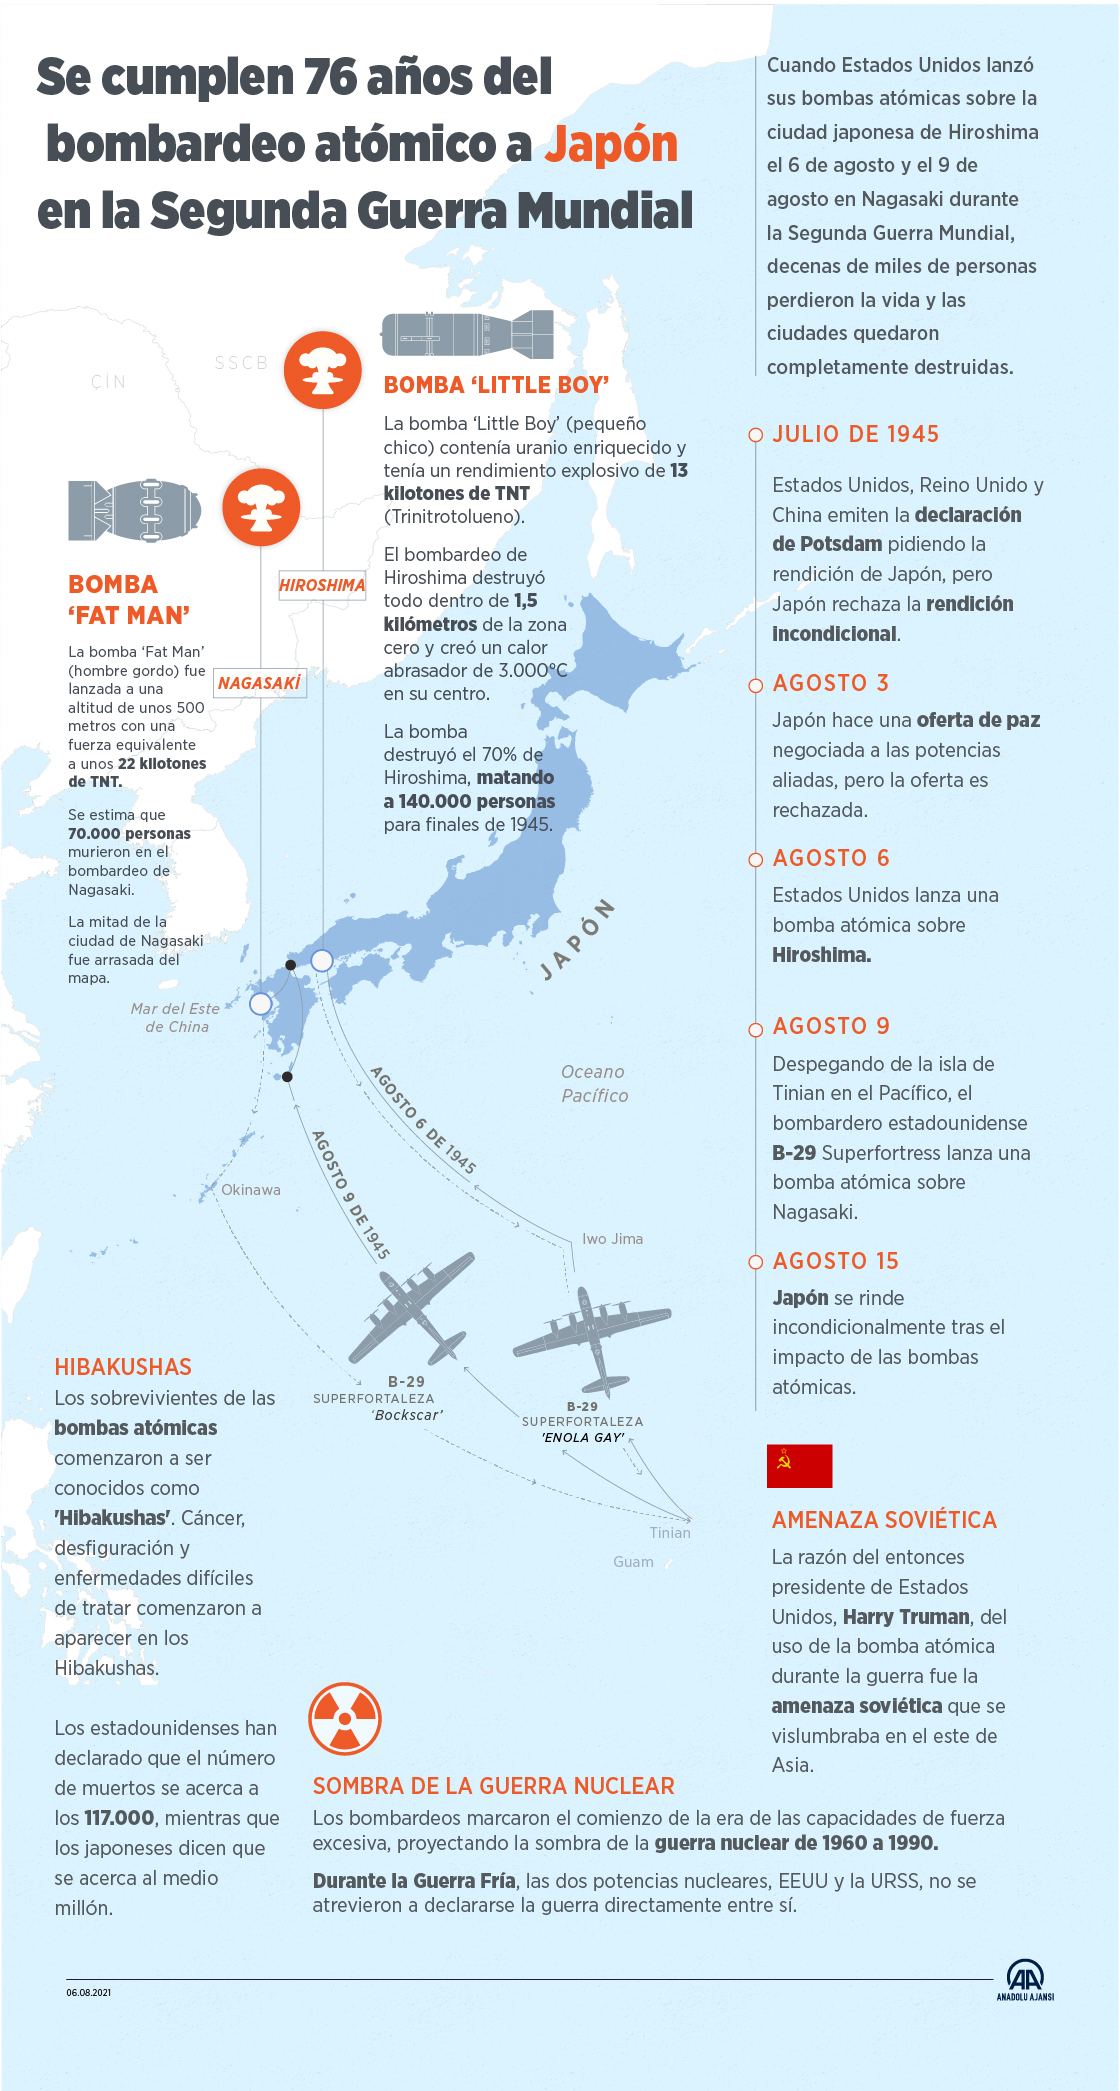 Se cumplen 76 años del bombardeo atómico a Japón en la Segunda Guerra Mundial